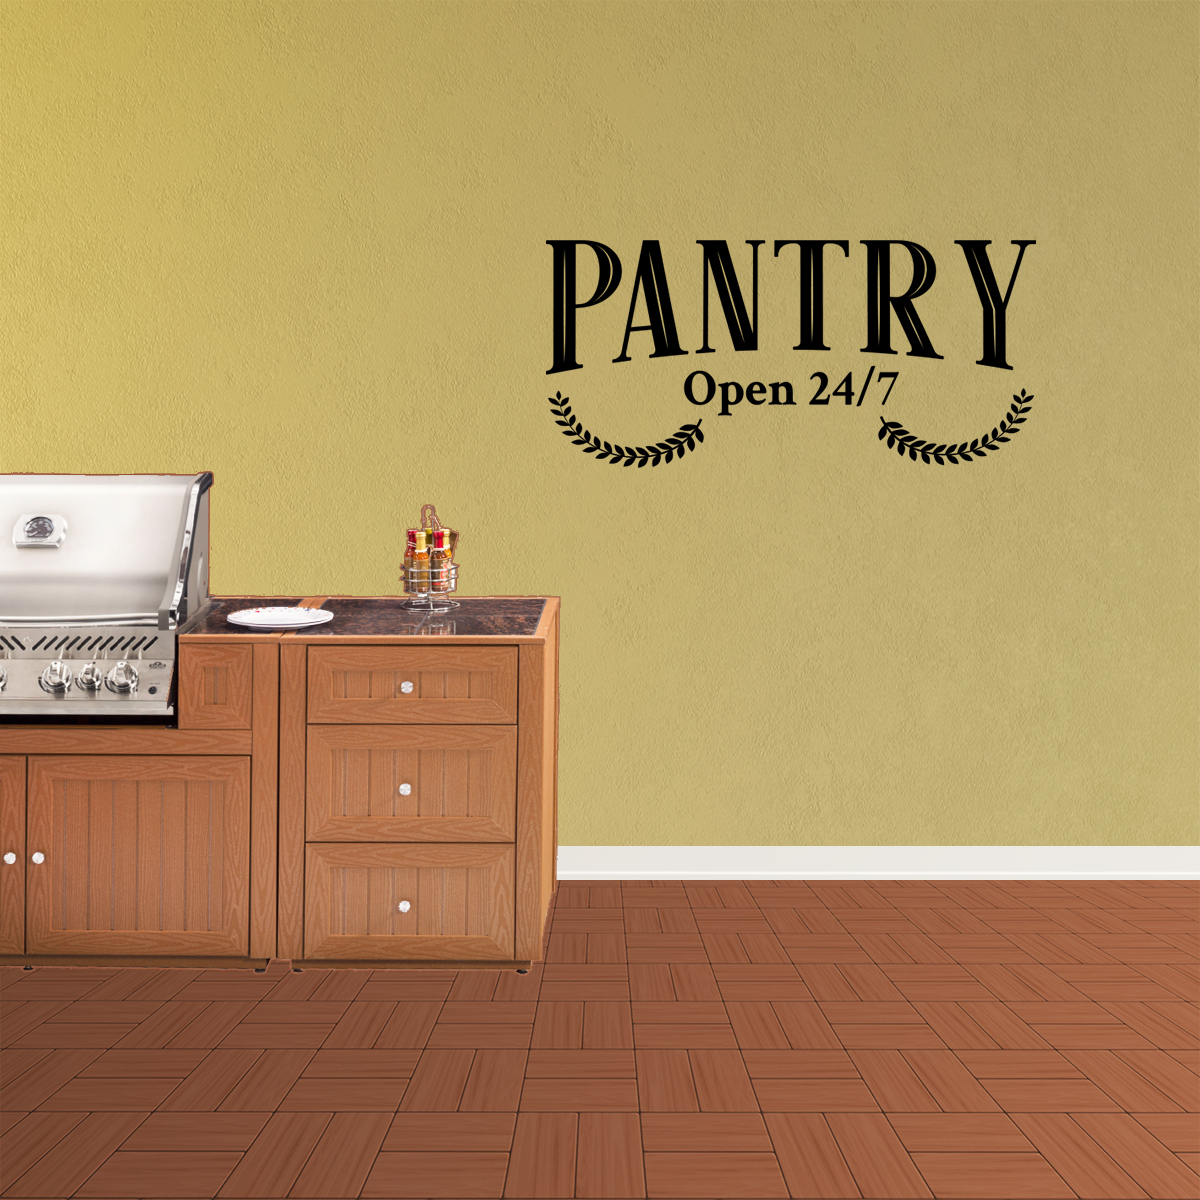 Pantry Open 24//7 White tin Sign 16 x 6 tin Sign Wall Decor